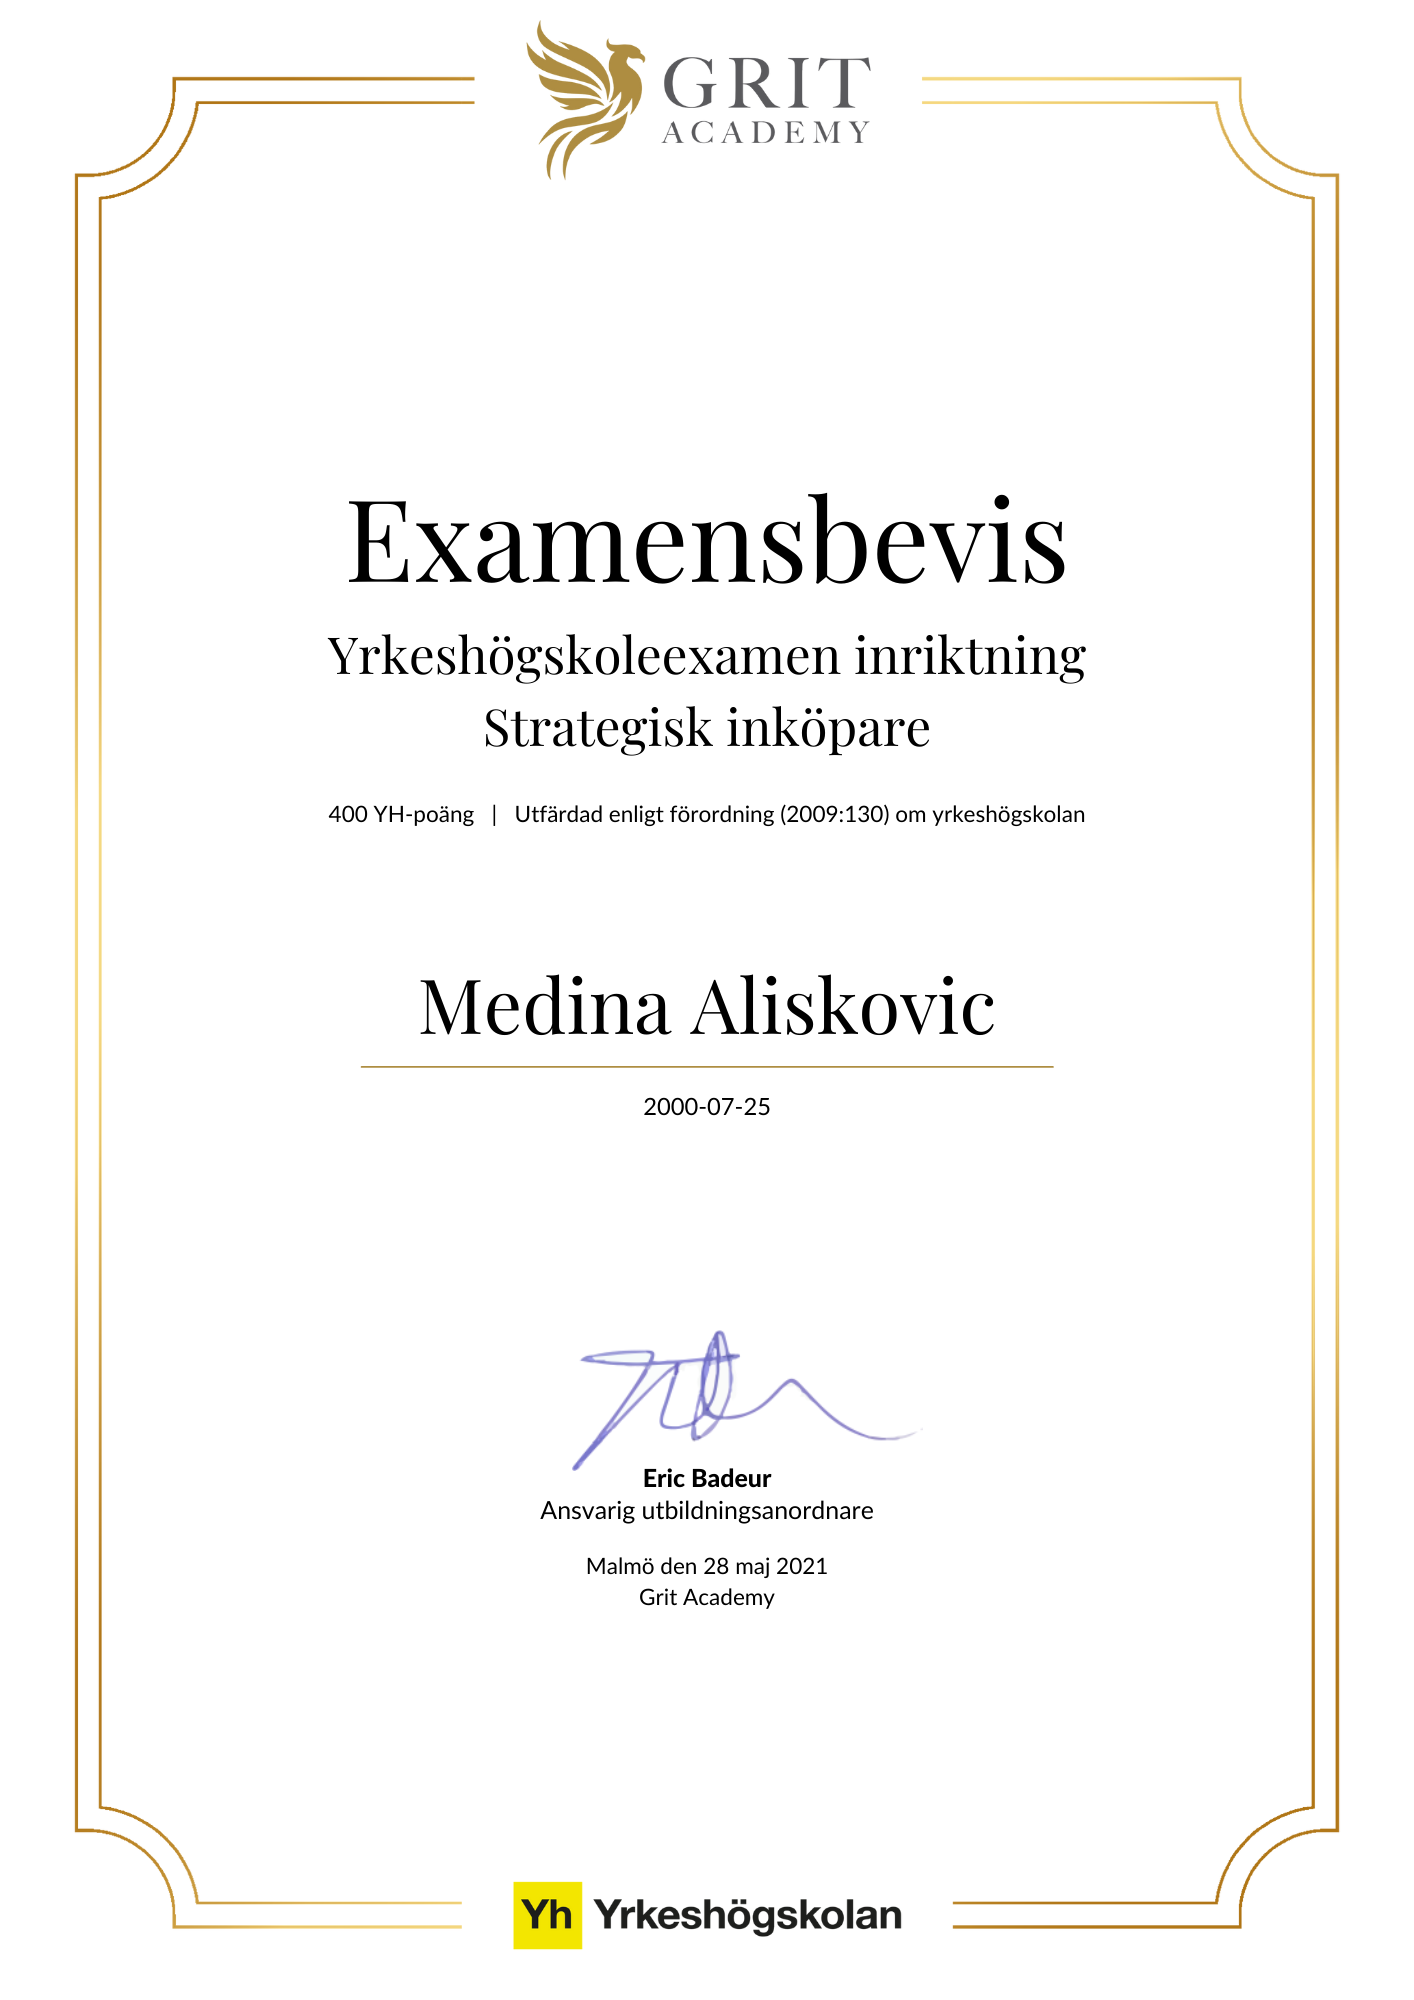 Examensbevis Medina Aliskovic - 1